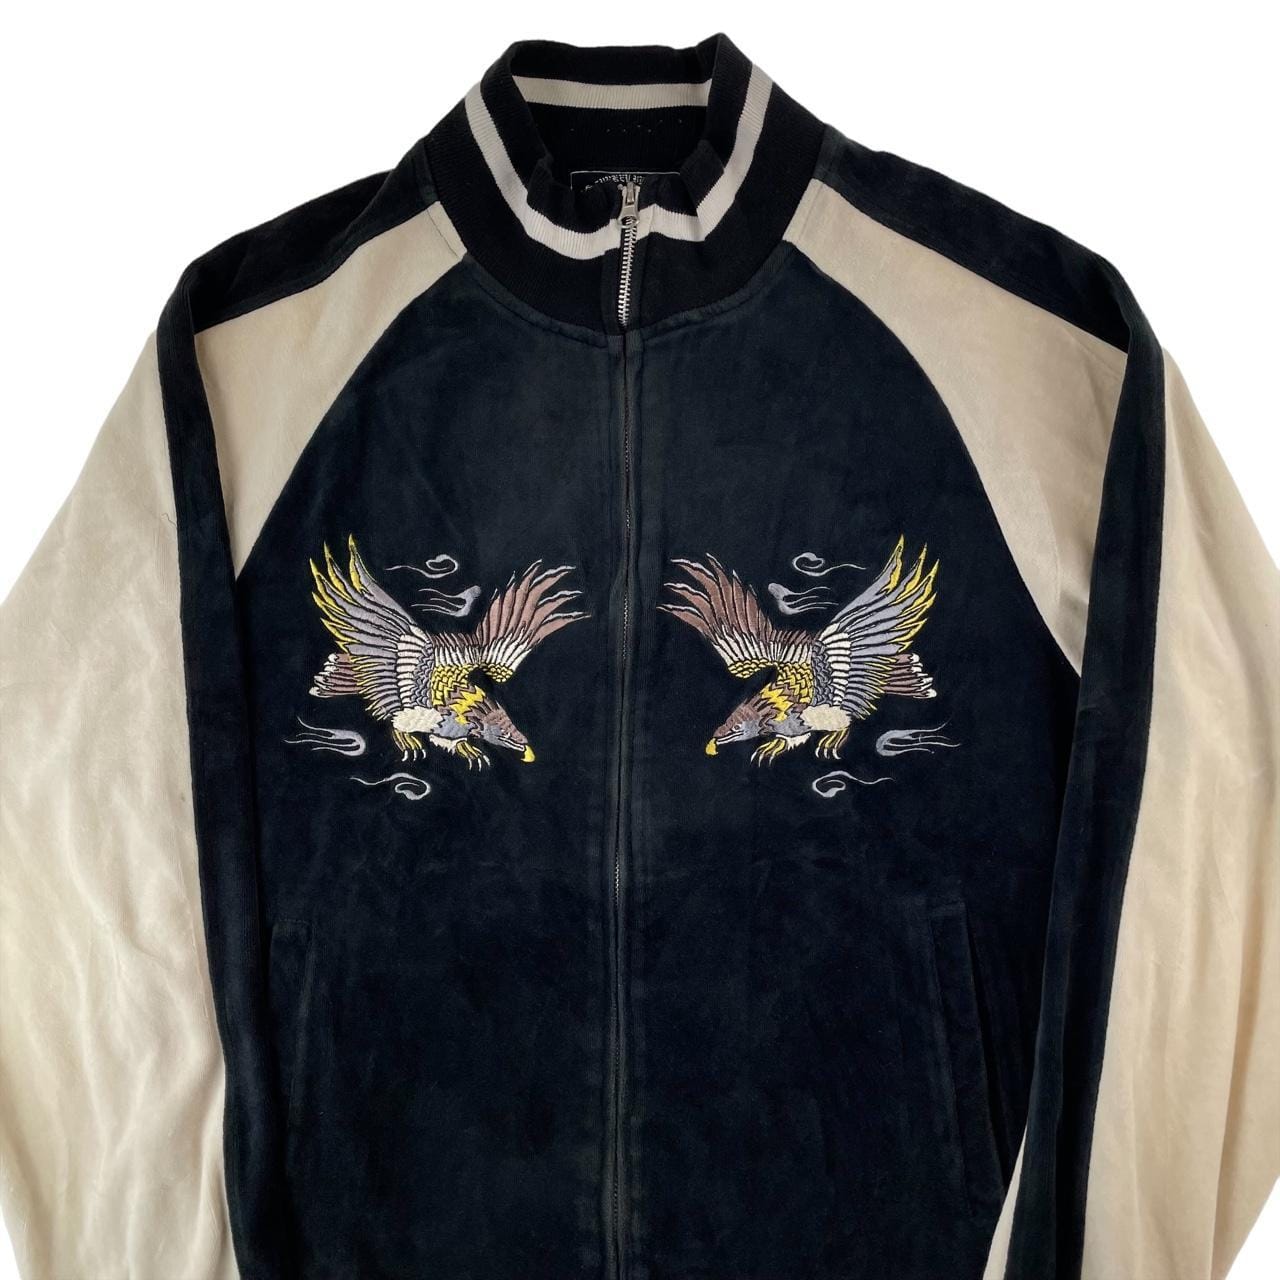 Vintage Eagle velour Japanese jacket size M - second wave vintage